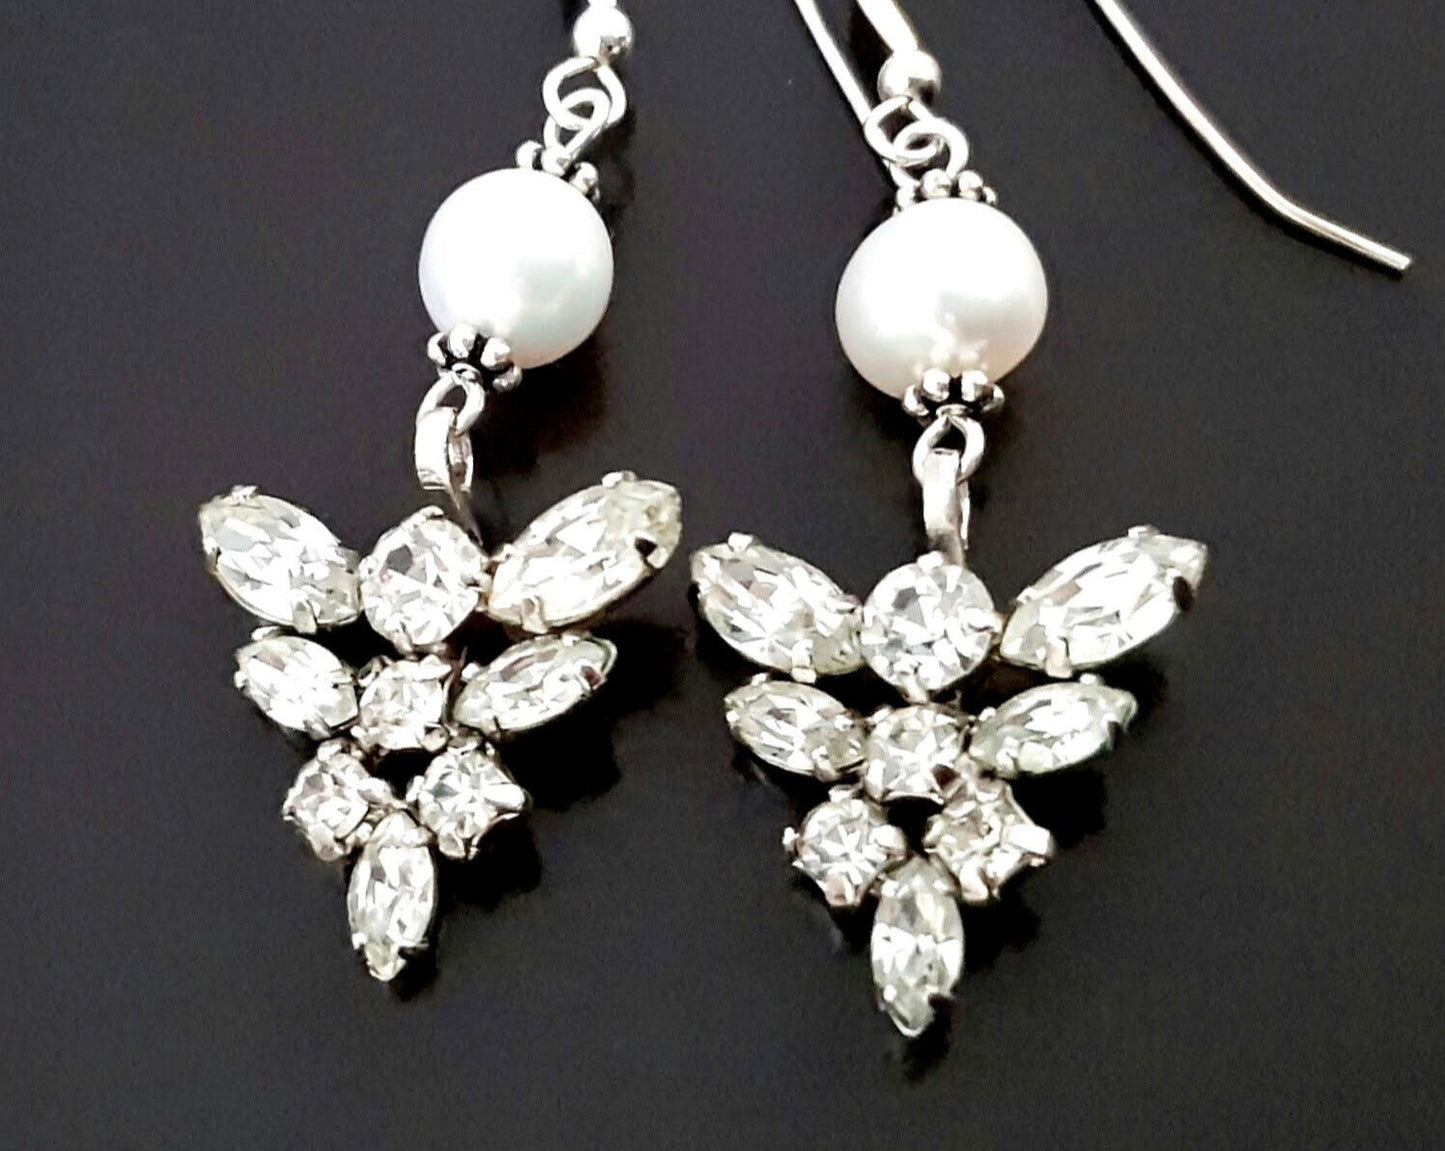 Vintage Crystal Pearl Sterling Silver Earrings-Handcrafted-Vintage Clear Crystal-Freshwater Pearls